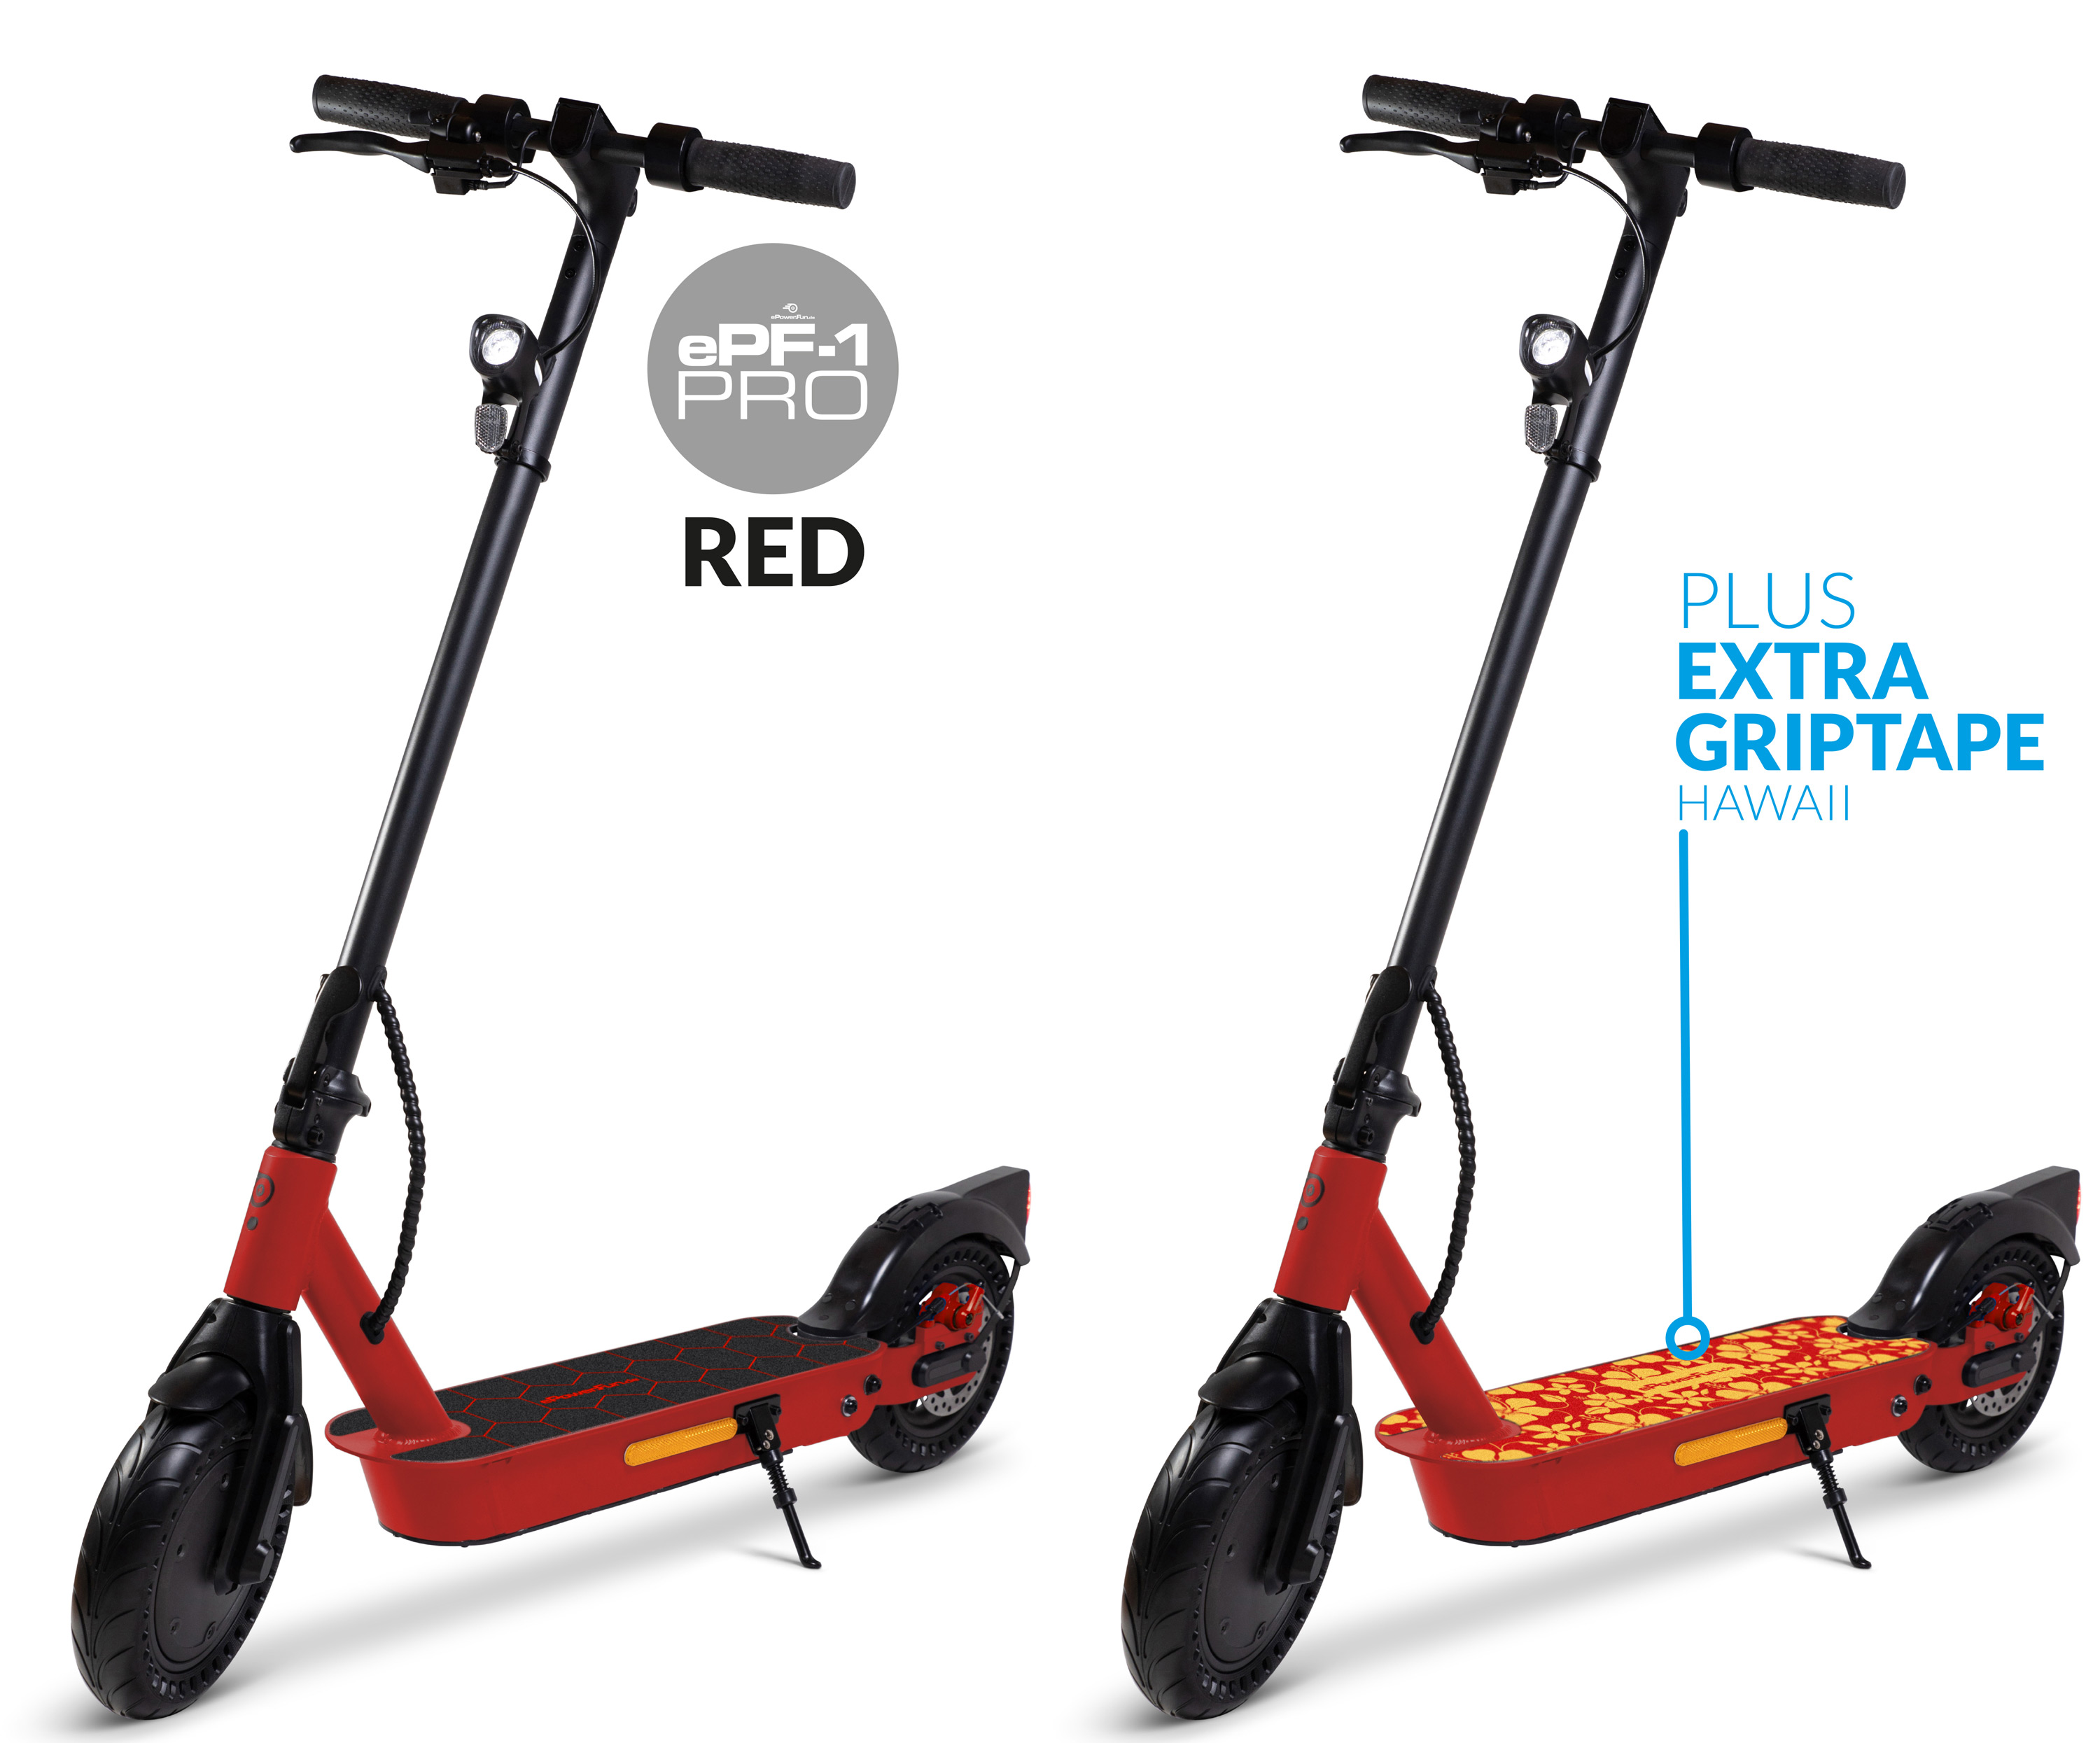 ePF-1 PRO Red eScooter mit Straßenzulassung